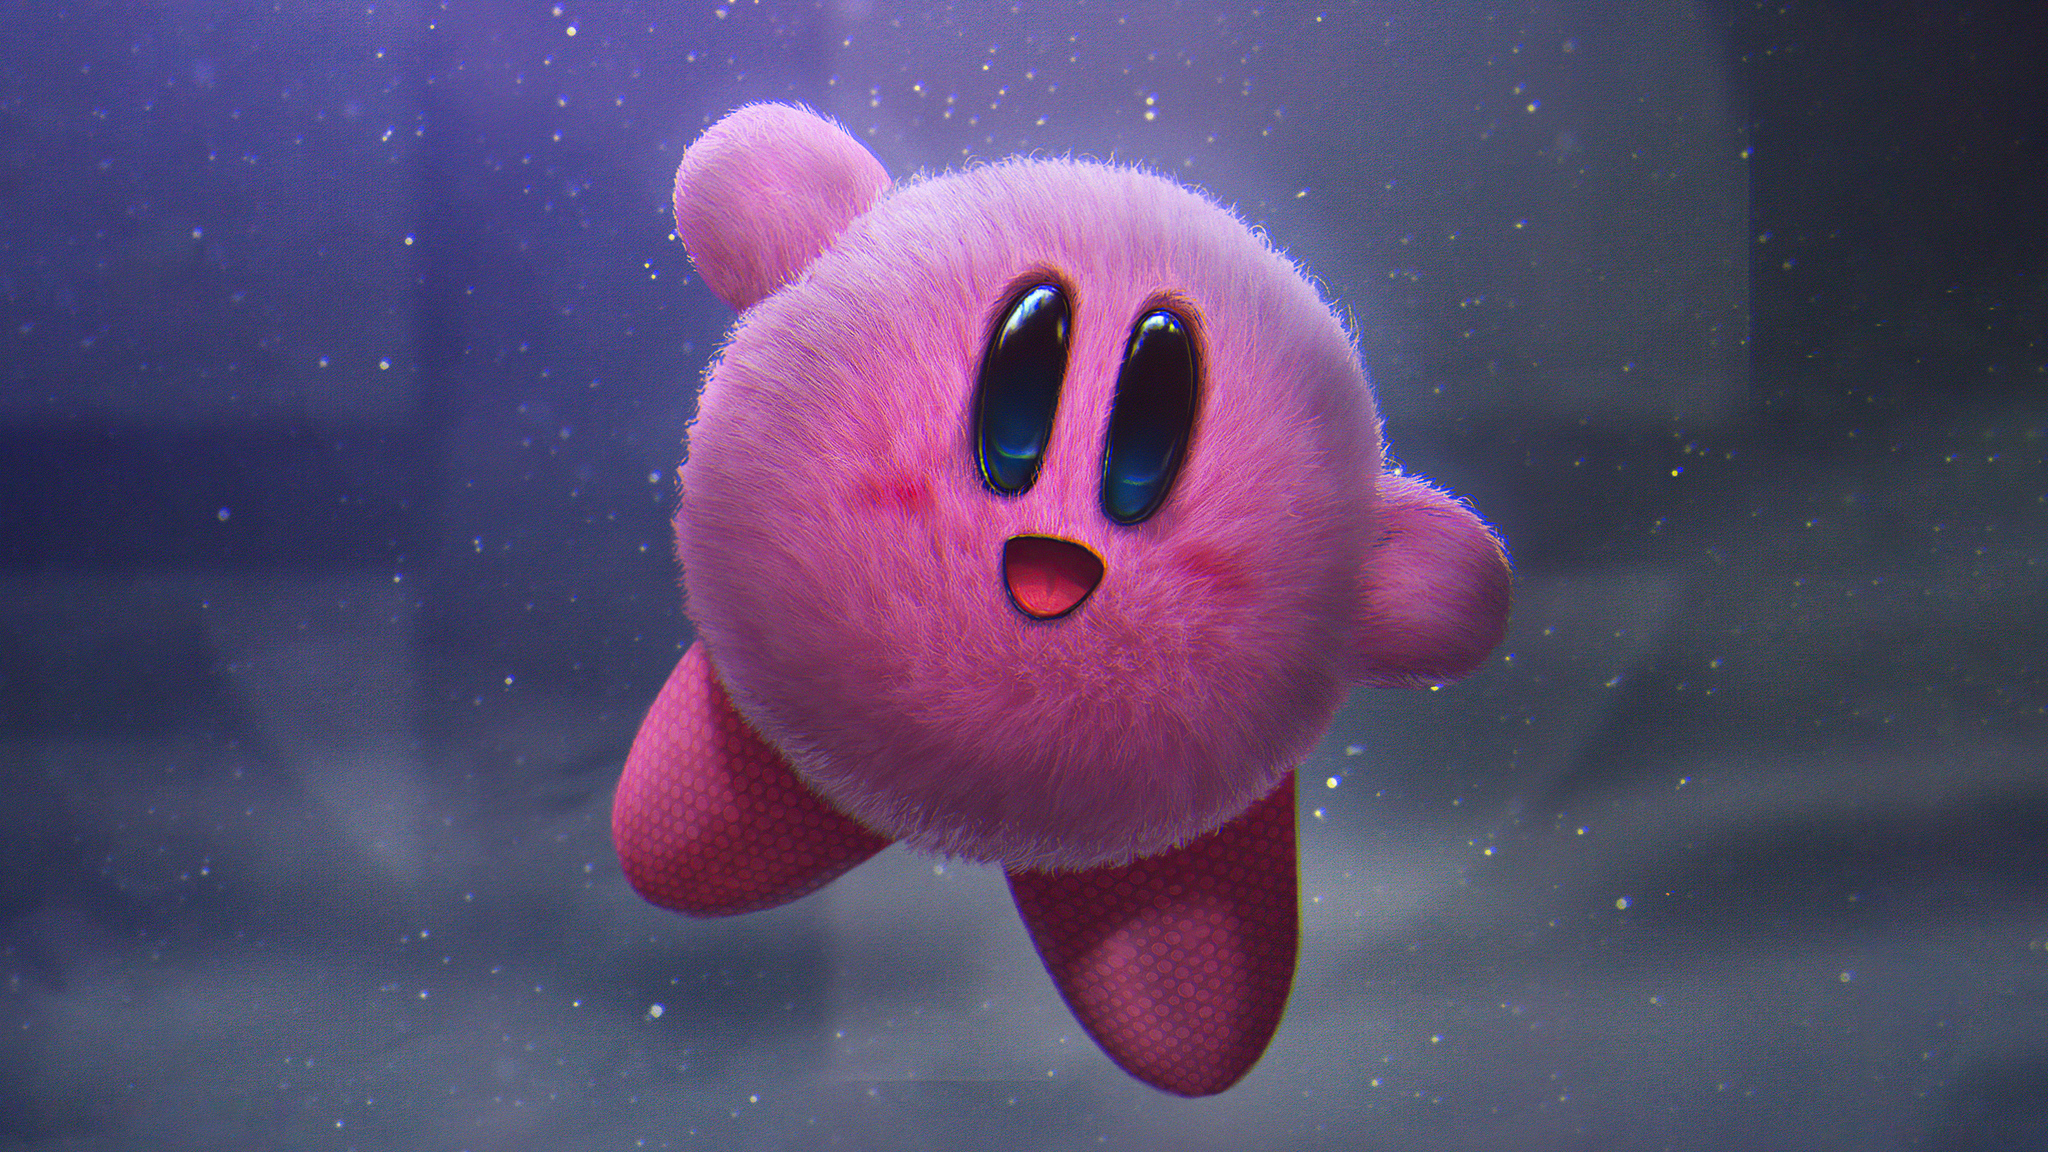 Trong game Kirby Super Smash Bros với độ phân giải 2048x1152, bạn sẽ có những trải nghiệm vô cùng thú vị và sống động. Đừng bỏ lỡ cơ hội được khám phá tất cả về vị anh hùng dễ thương này với những hình ảnh chất lượng cao nhất!